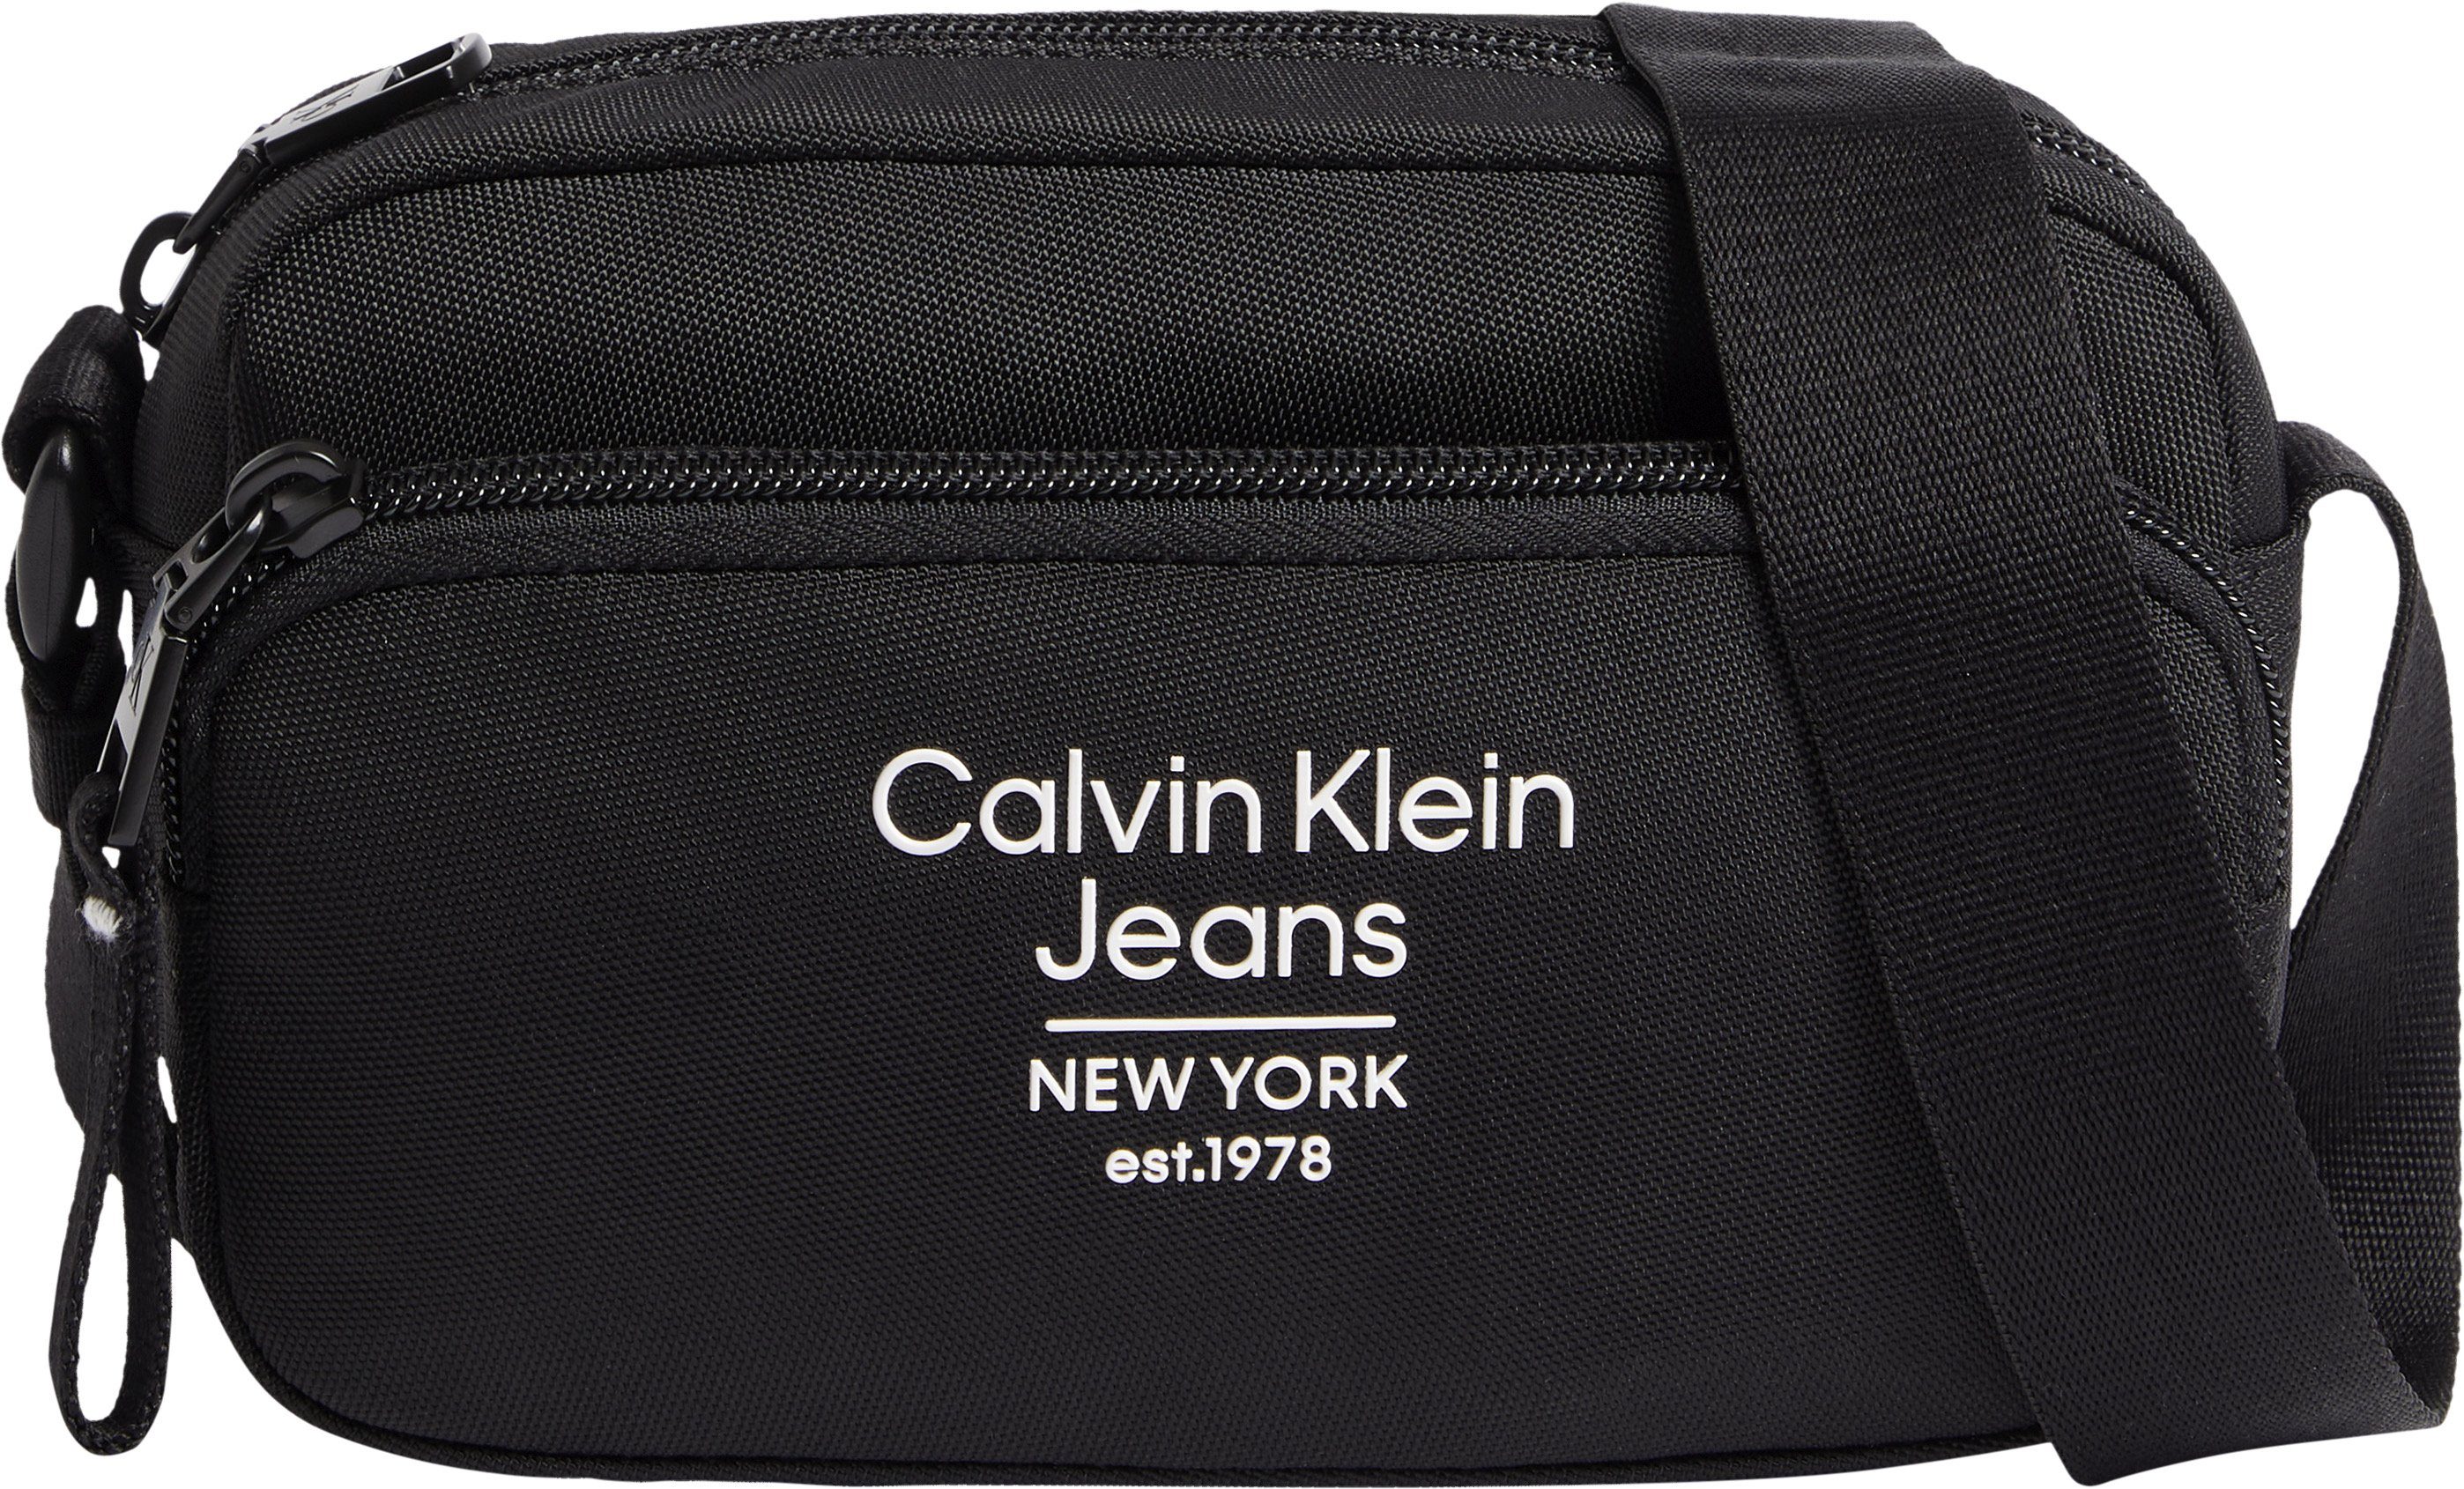 Calvin Klein kleine Mini Umhängetasche Bag ESSENTIALS SPORT CAMERABAG18 EST, Jeans